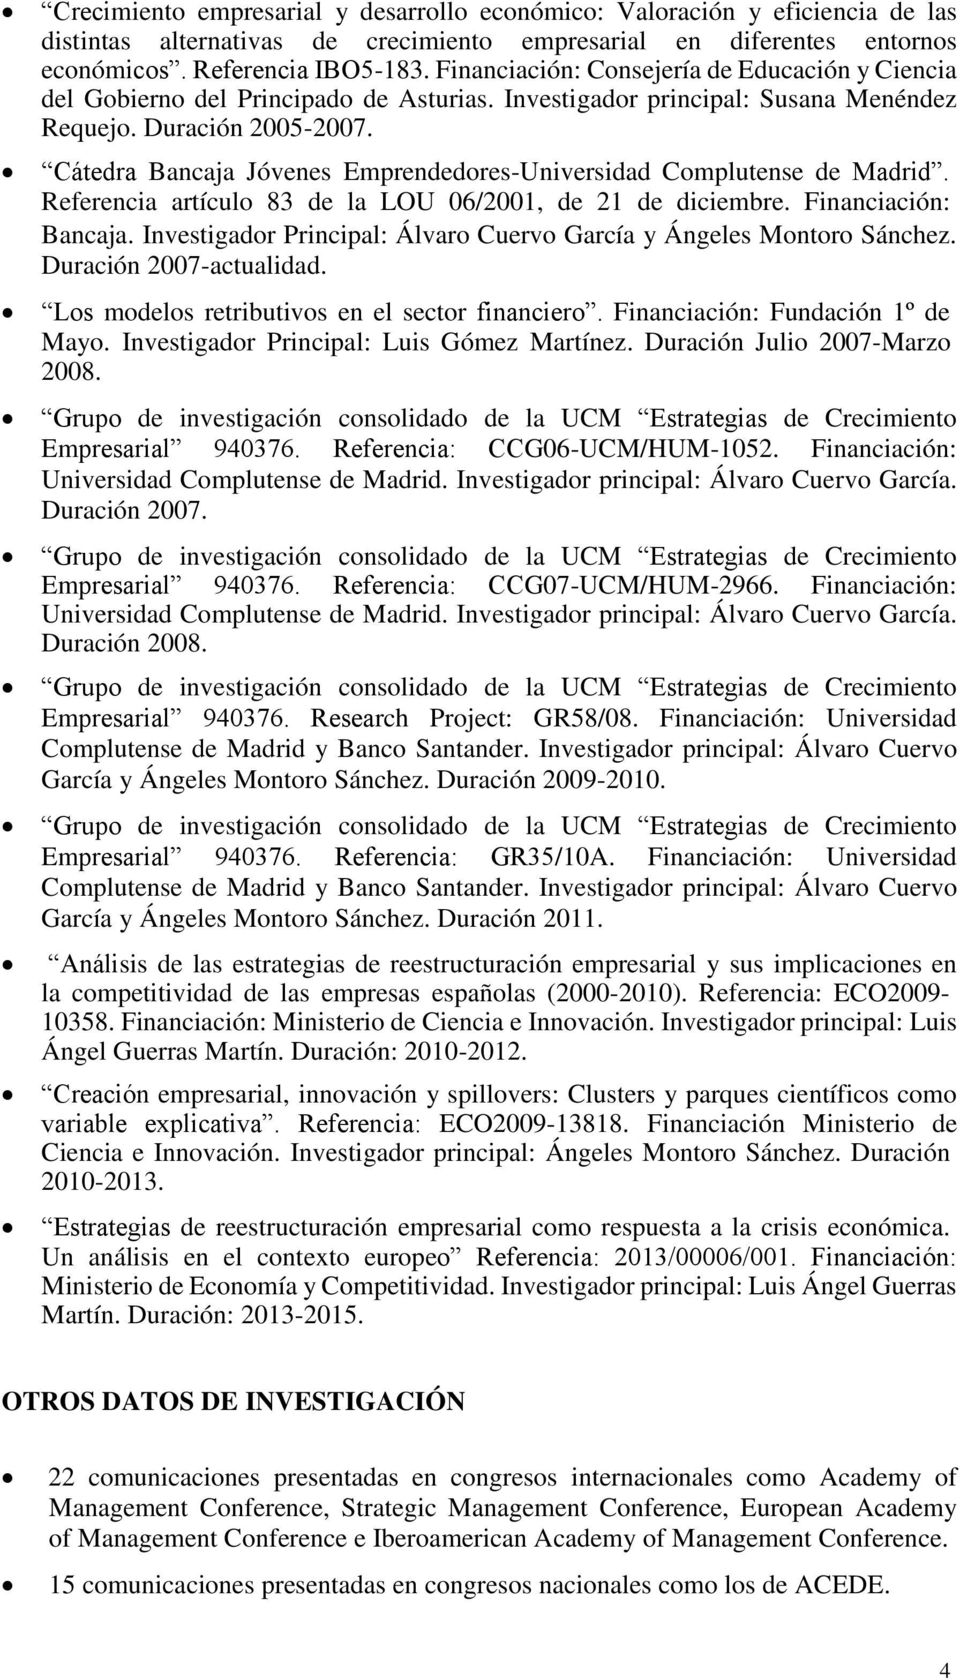 Cátedra Bancaja Jóvenes Emprendedores-Universidad Complutense de Madrid. Referencia artículo 83 de la LOU 06/2001, de 21 de diciembre. Financiación: Bancaja.